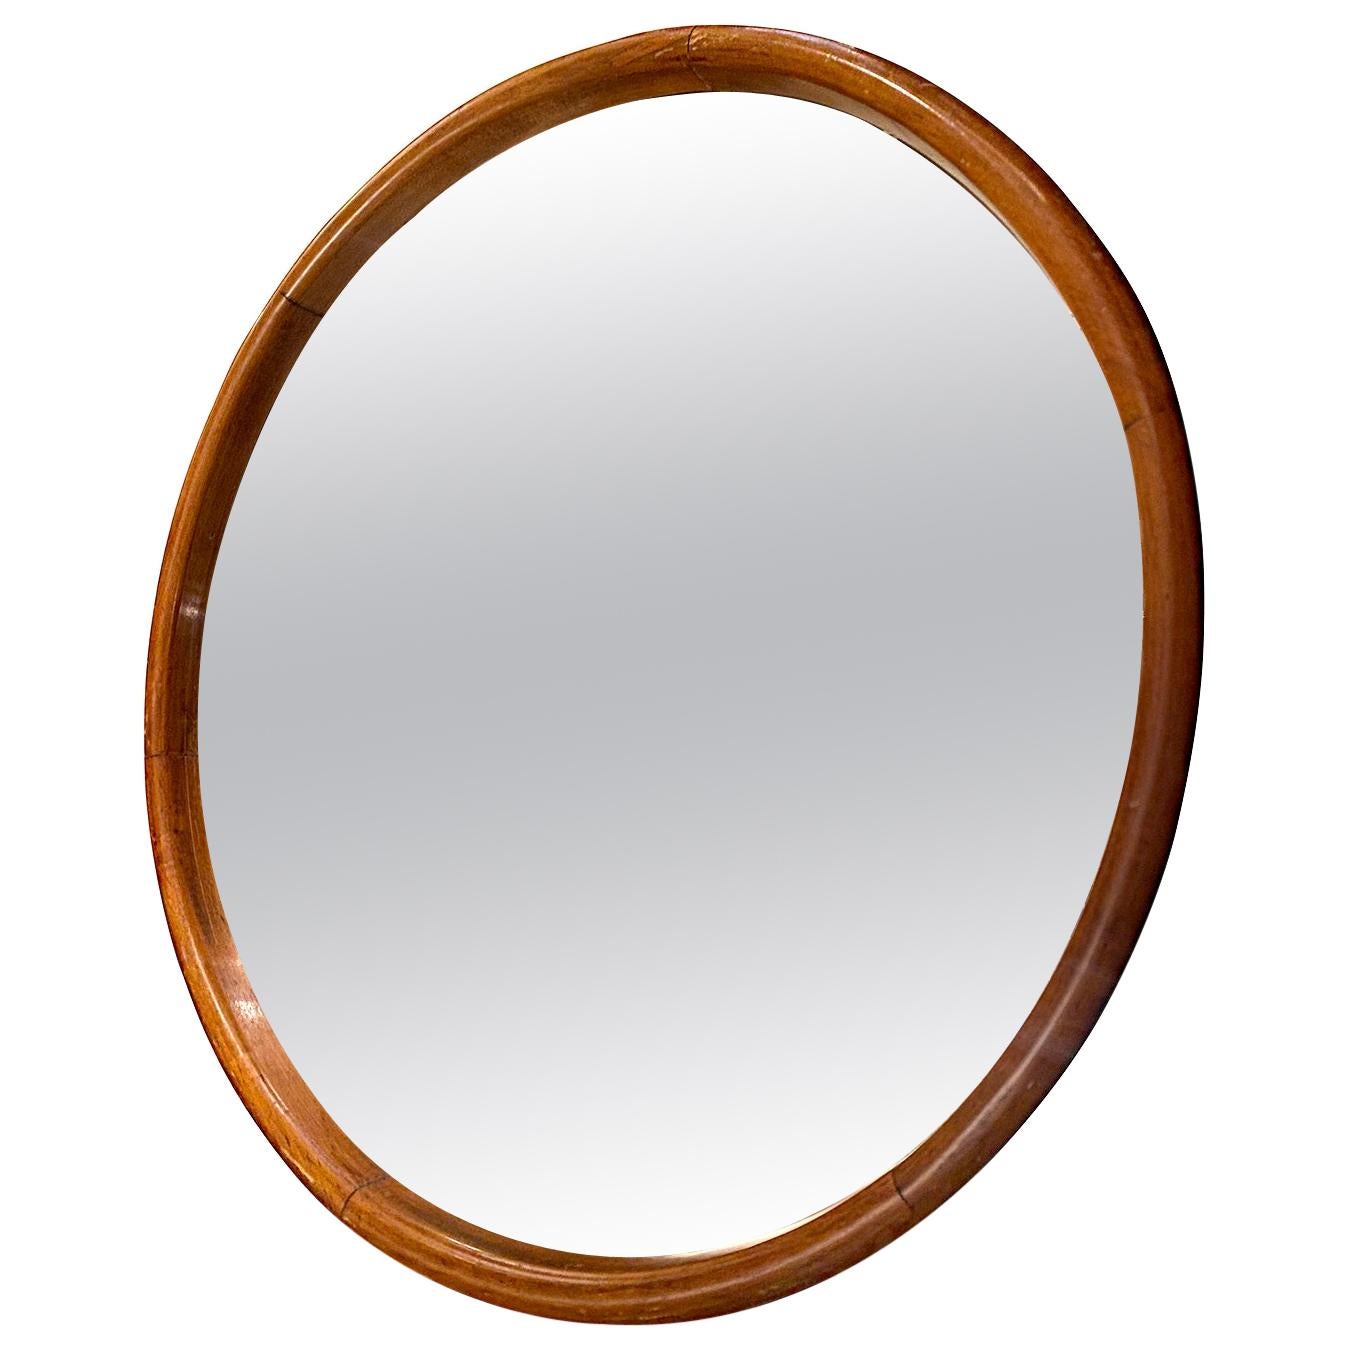 English Round Wooden Frame Mirror